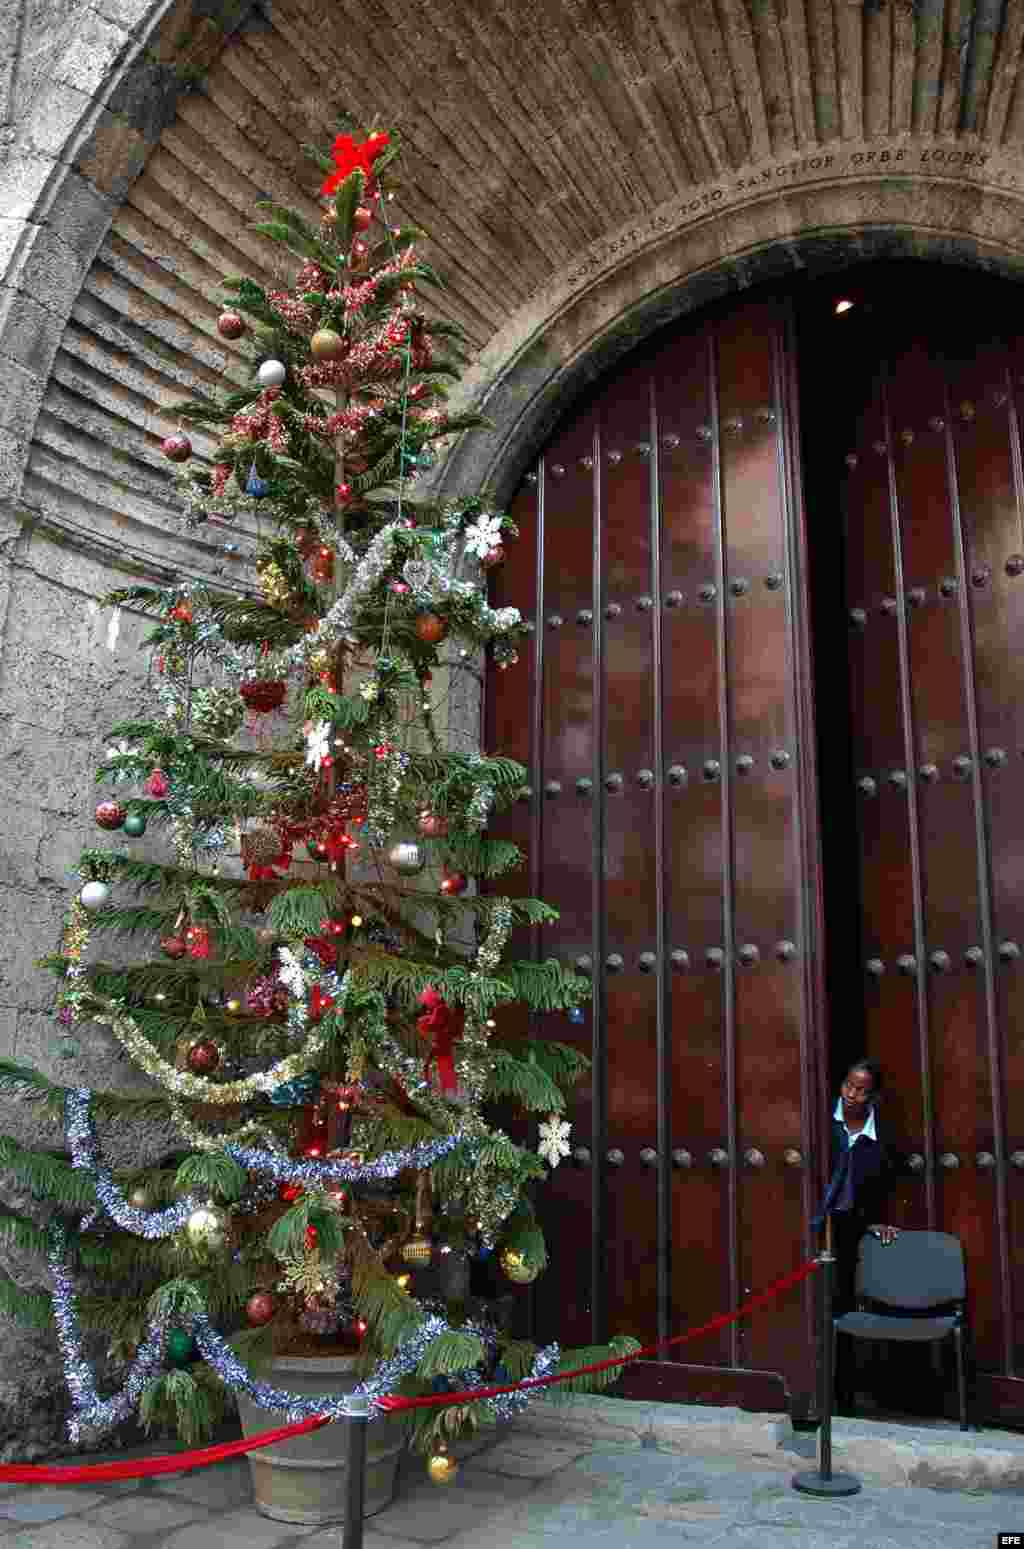 Una guardia de seguridad se asoma a observar un árbol de navidad colocado en la puerta de una sala de conciertos.